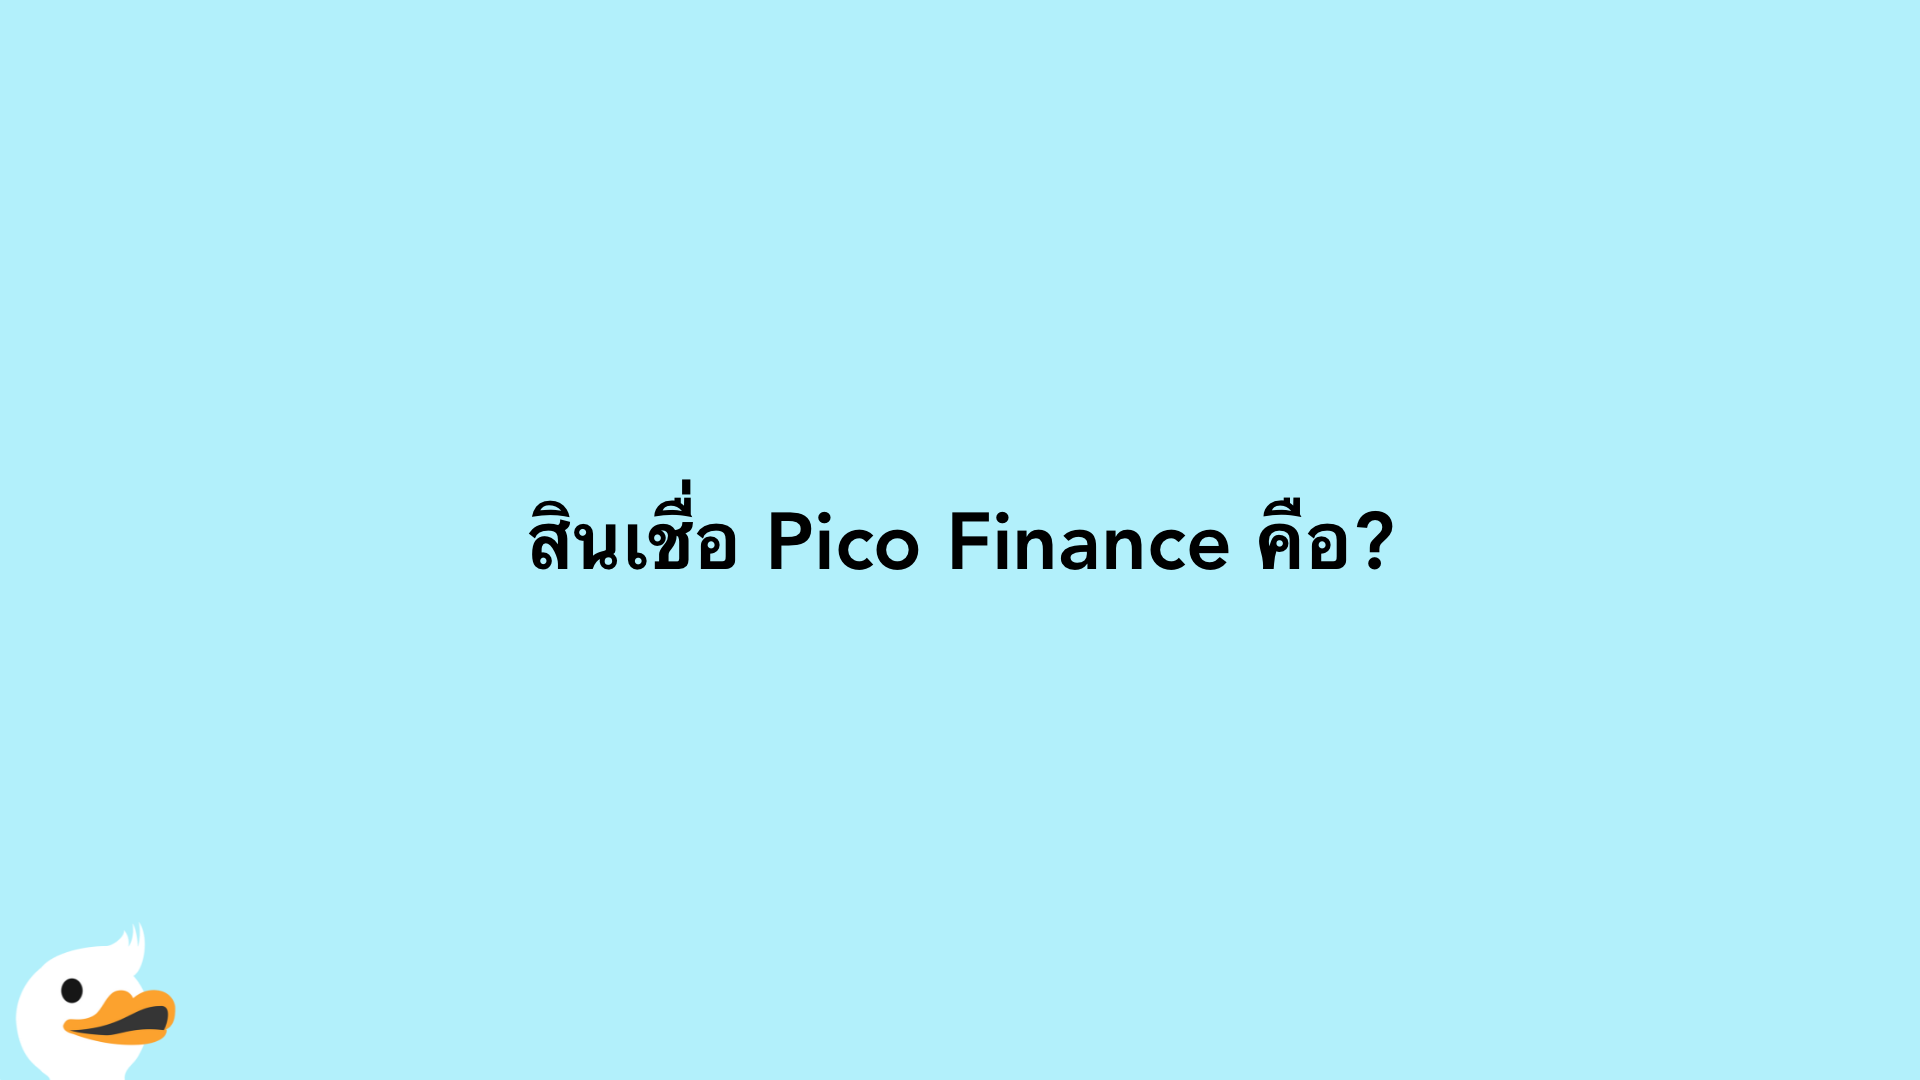 สินเชื่อ Pico Finance คือ?